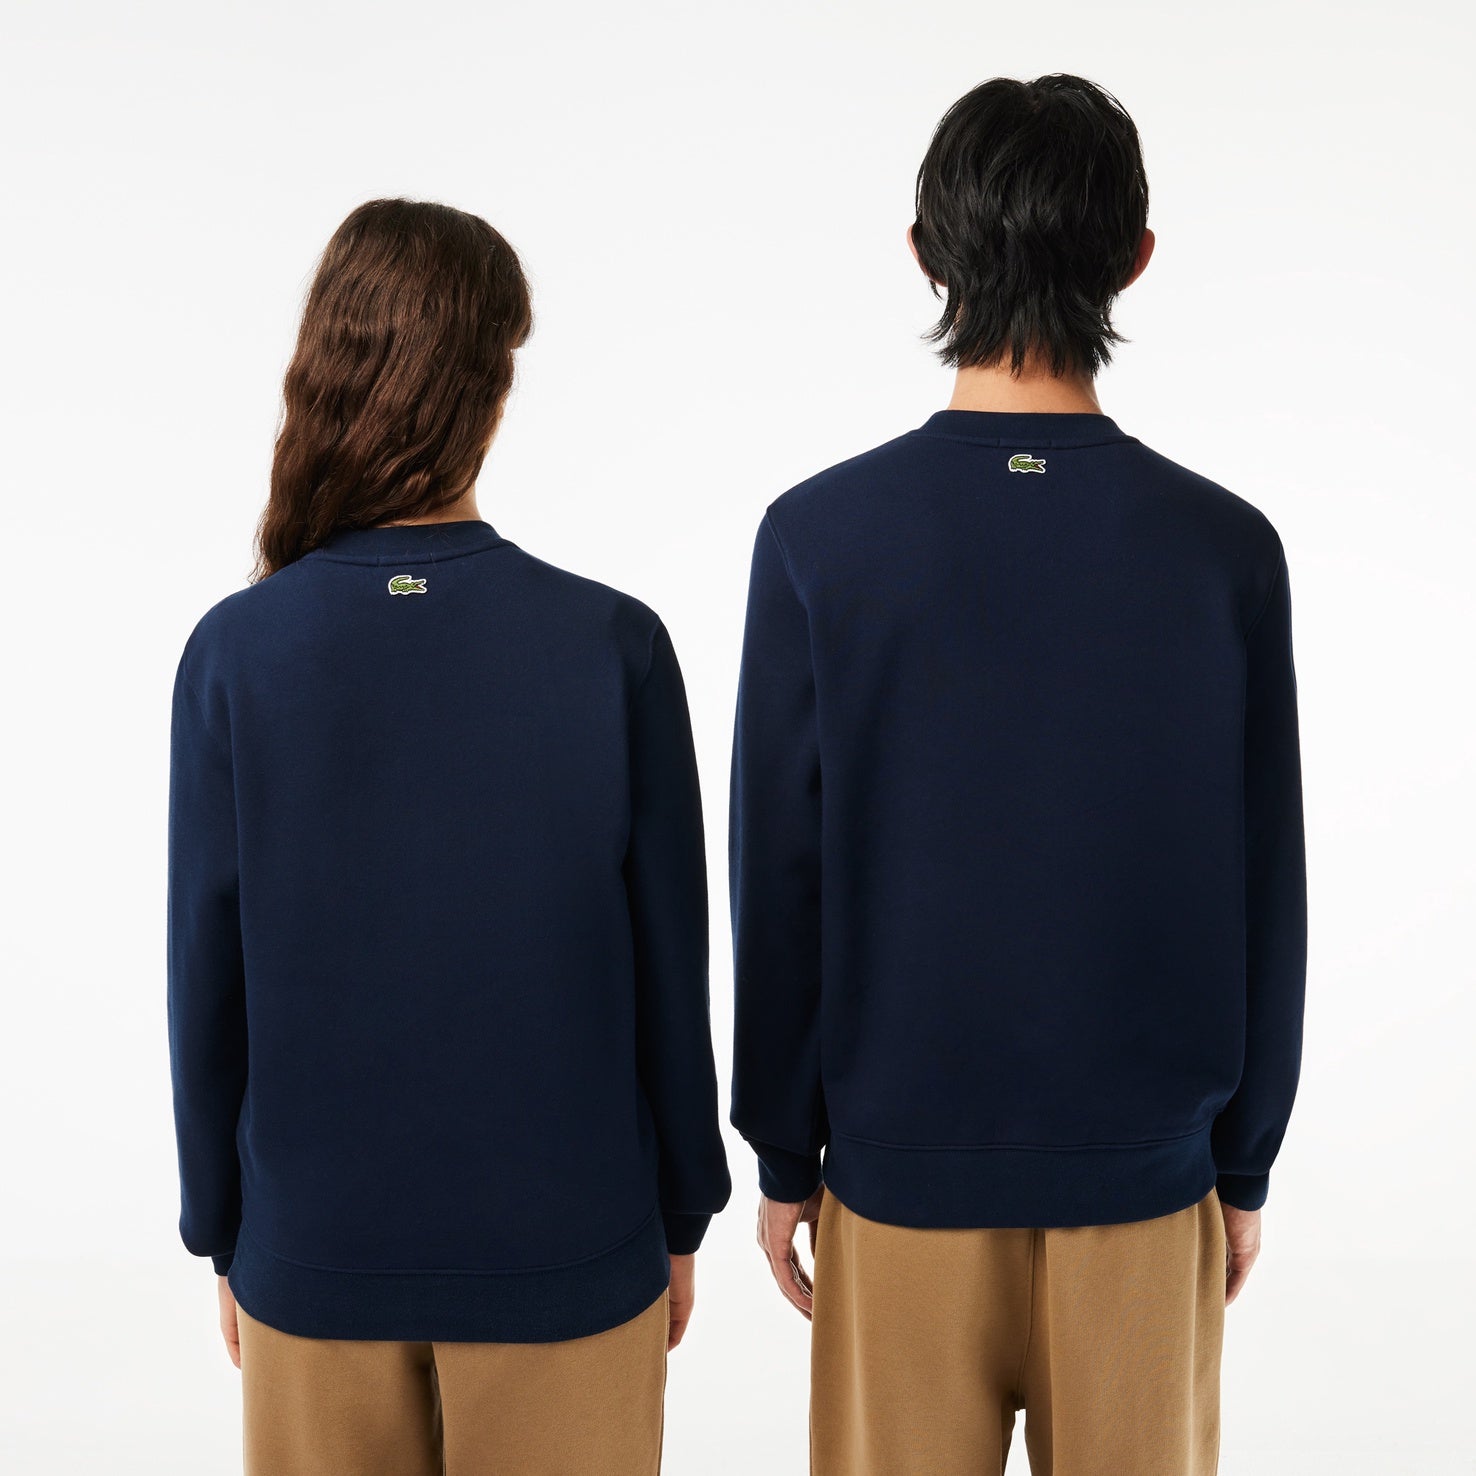 Sweatshirt Navy Lacoste 166 Cotton SH1228 Fleece Branded Blue